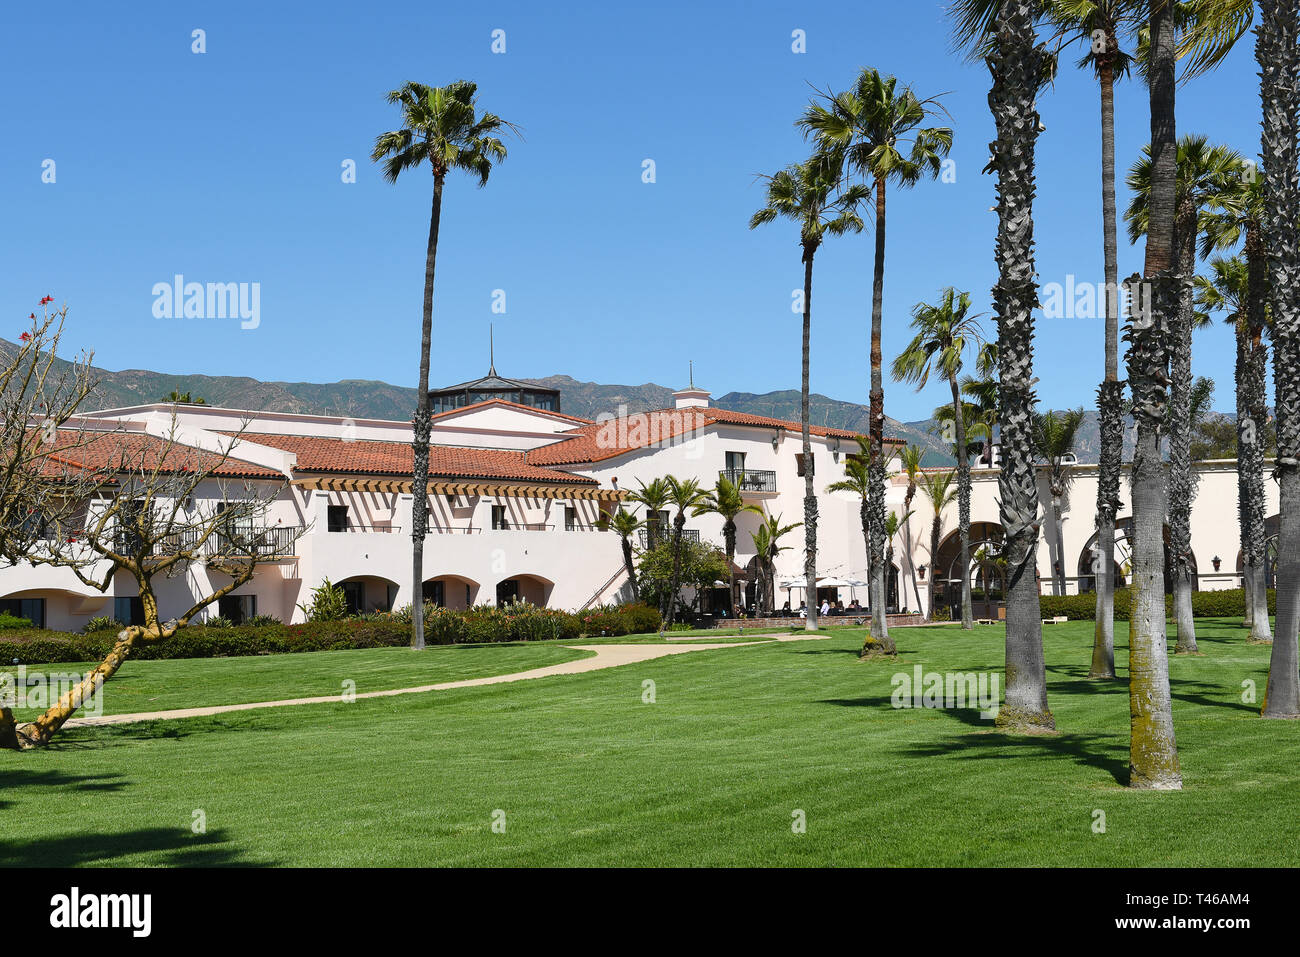 SANTA BARBARA, CALIFORNIE - Le 11 avril 2019 : Hilton Santa Barbara Beachfront Resort, situé à quelques minutes du centre-ville avec une vue imprenable de veille Banque D'Images